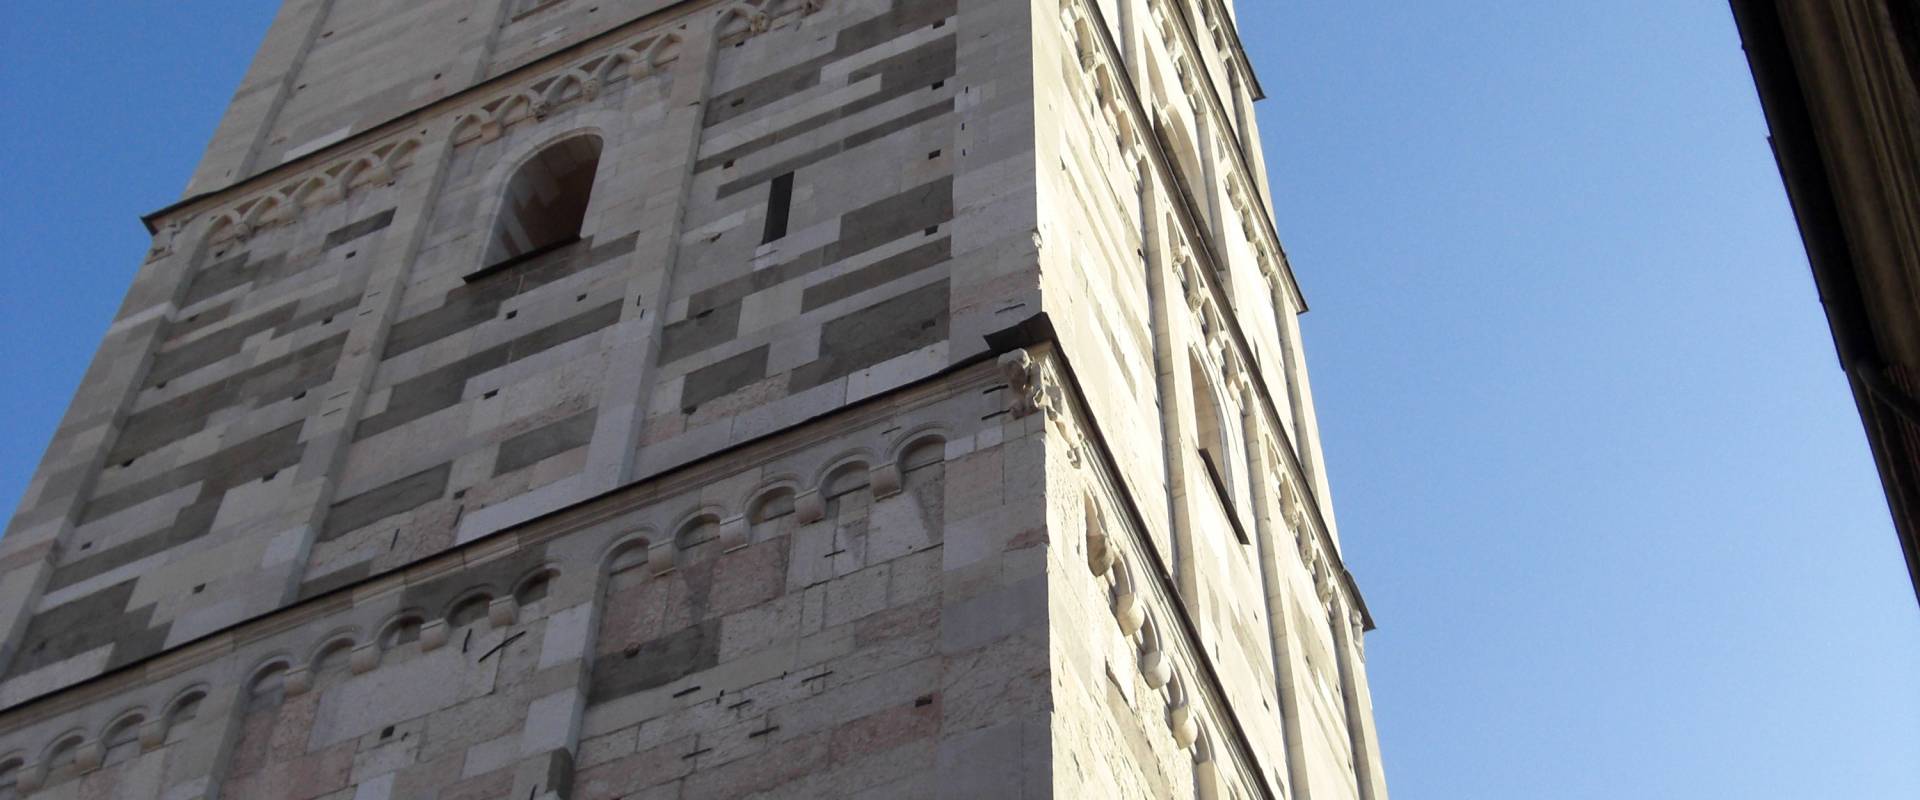 Torre Ghirlandina di Modena dal basso 3 foto di Matteolel